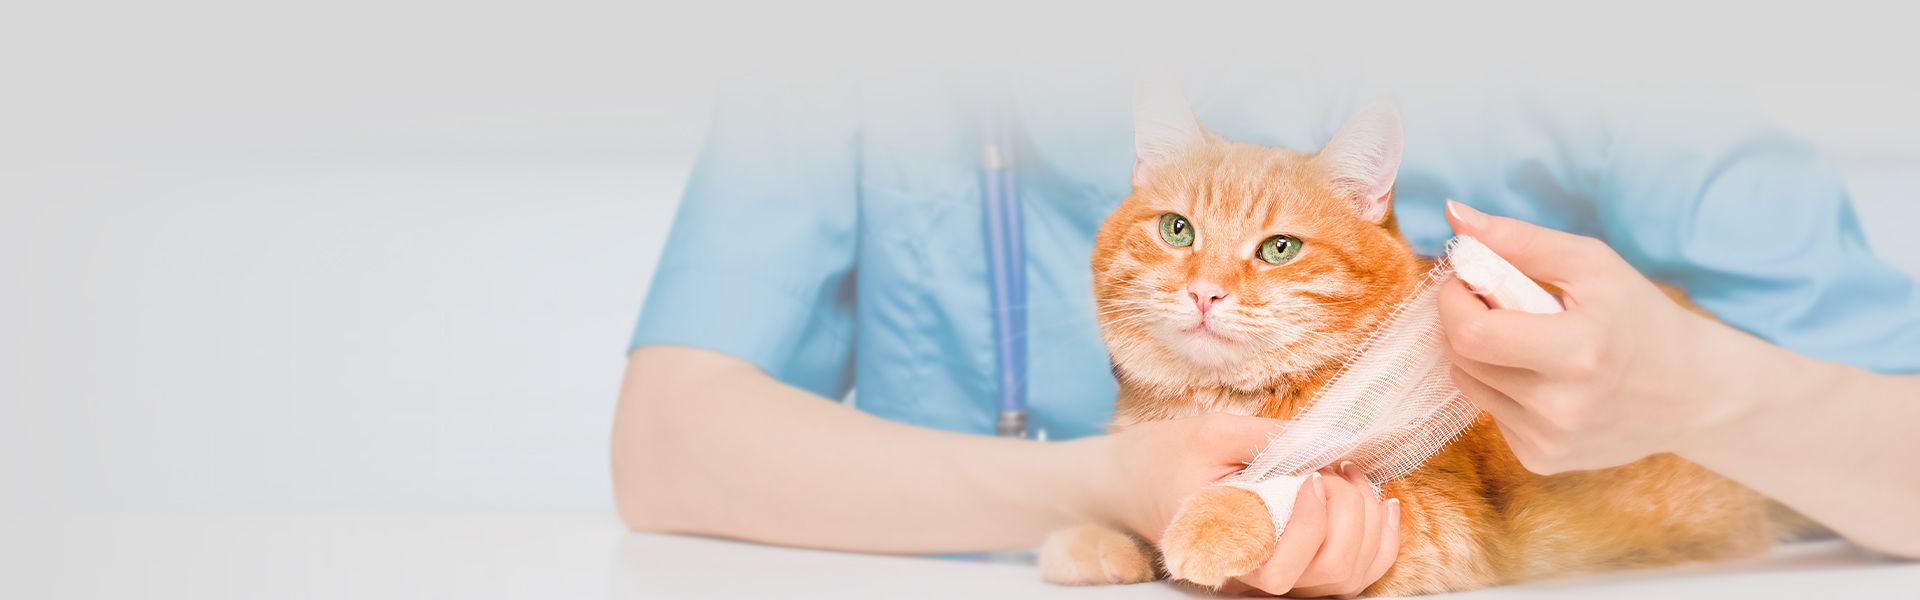 vet bandaging orange cat